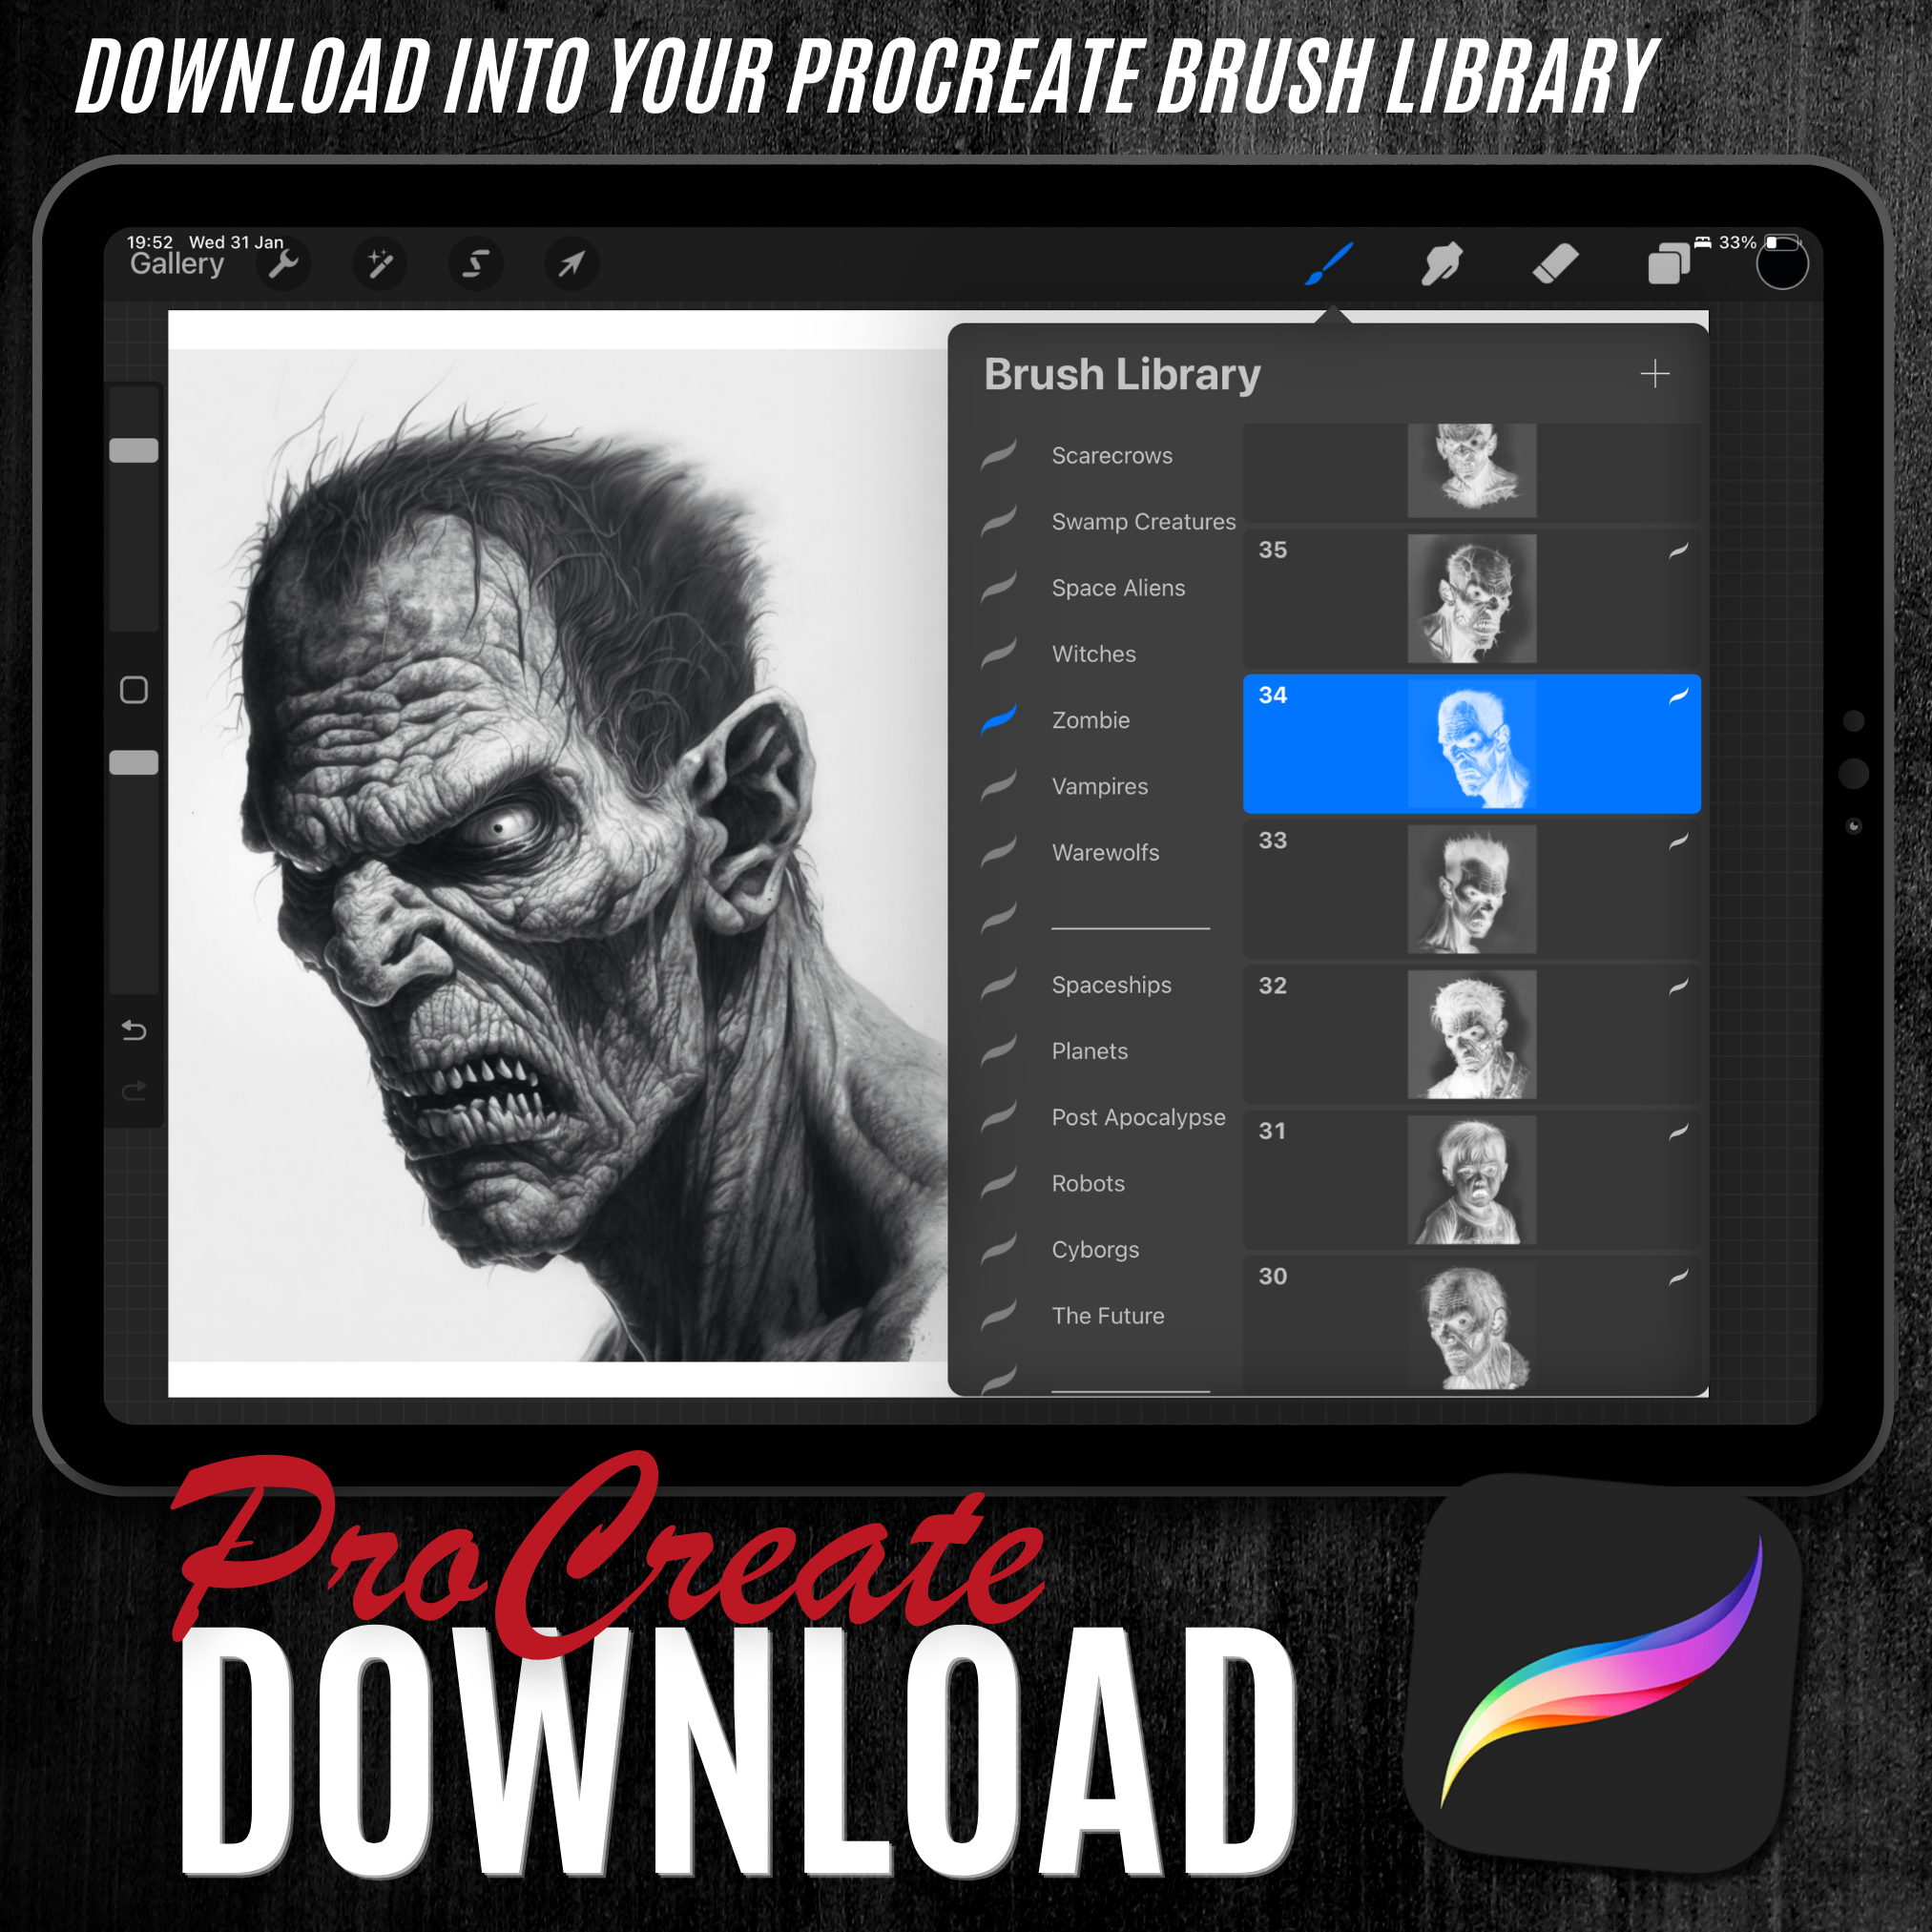 Digitale Horror-Designsammlung „Zombies“: 50 Procreate- und Skizzenbuchbilder